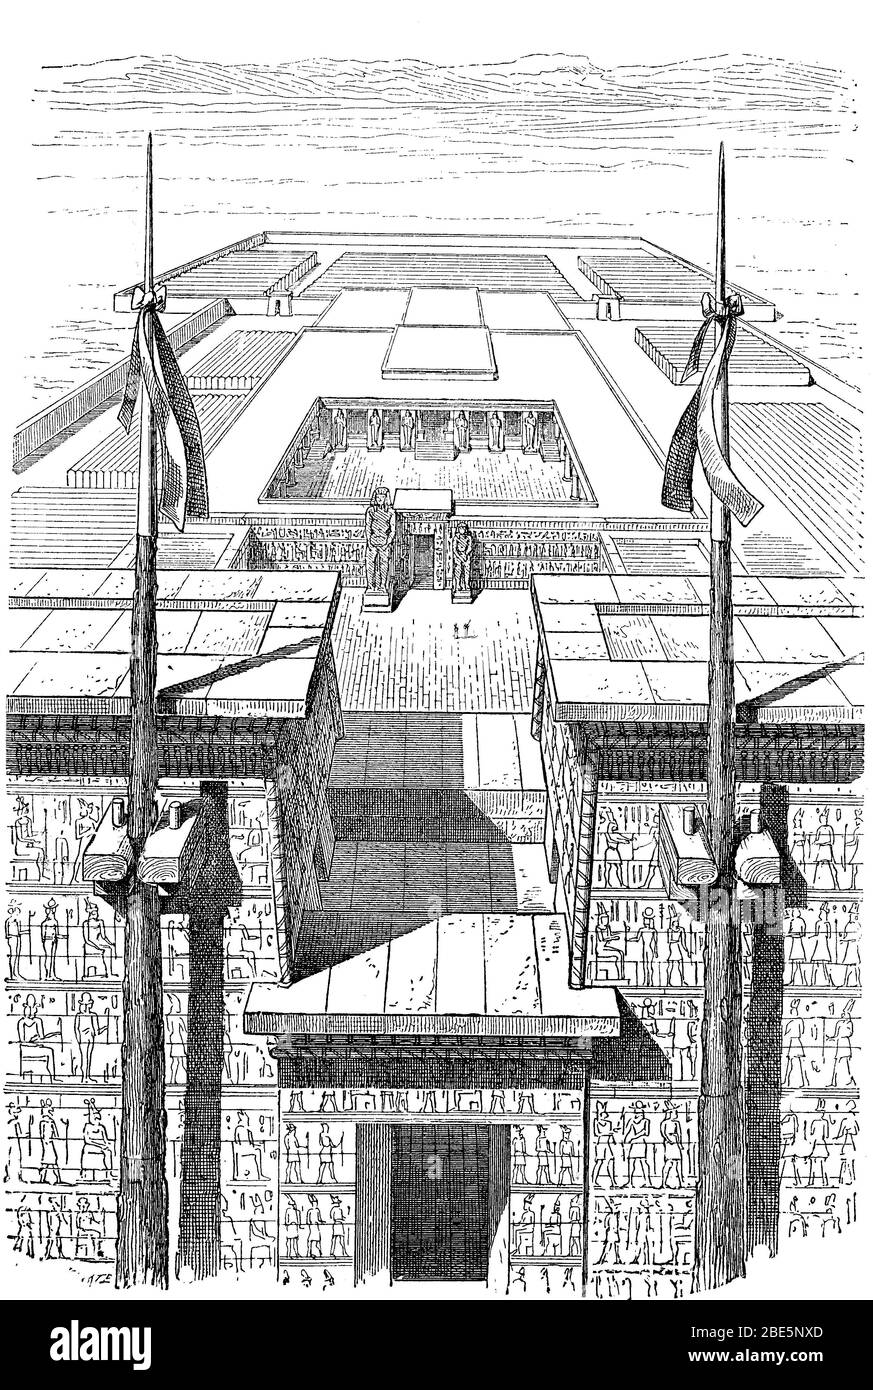 Das Ramesseum, ein Tempel, der von Ramses II in Theben-West errichtet wurde. Zusammen mit den anderen Tempeln, die dort standen, ist es eines der Millionen-Jahre-Häuser, Ägypten / das Ramesseum, ein von Ramses II. In Theben-West erbauter Tempel. Es zählt mit den anderen Tempeln, die dort stehen, zu den Millionenjahrhäusern, Ägypten, historisch, digital verbesserte Reproduktion eines Originals aus dem 19. Jahrhundert / digitale Reproduktion einer Originalvorlage aus dem 19. Jahrhundert Stockfoto